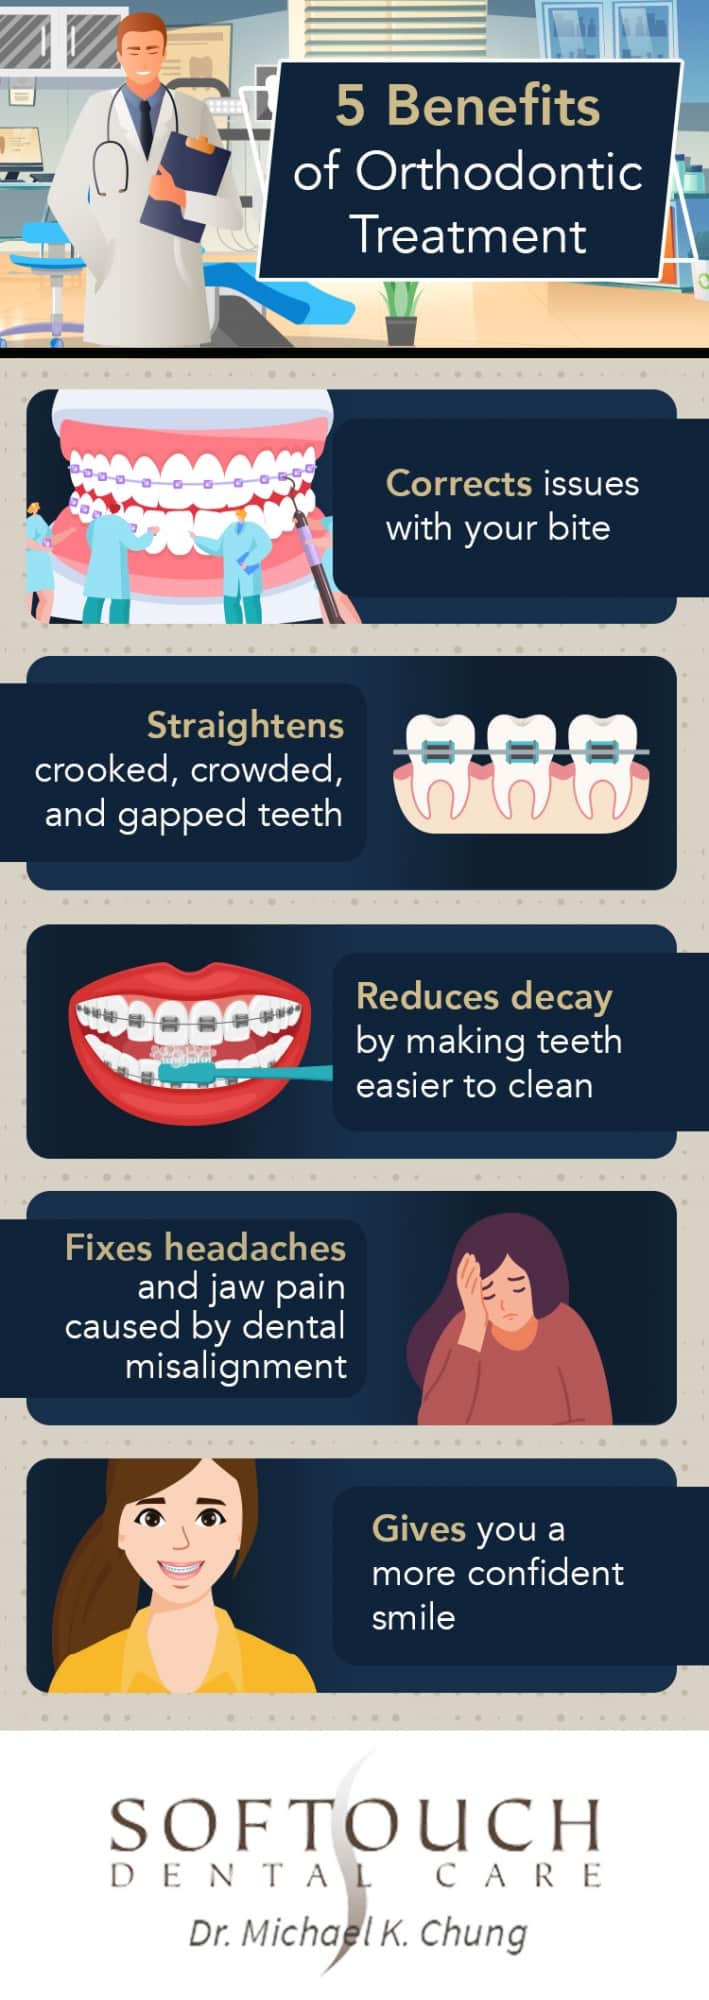 Benefits of orthodontics infographic